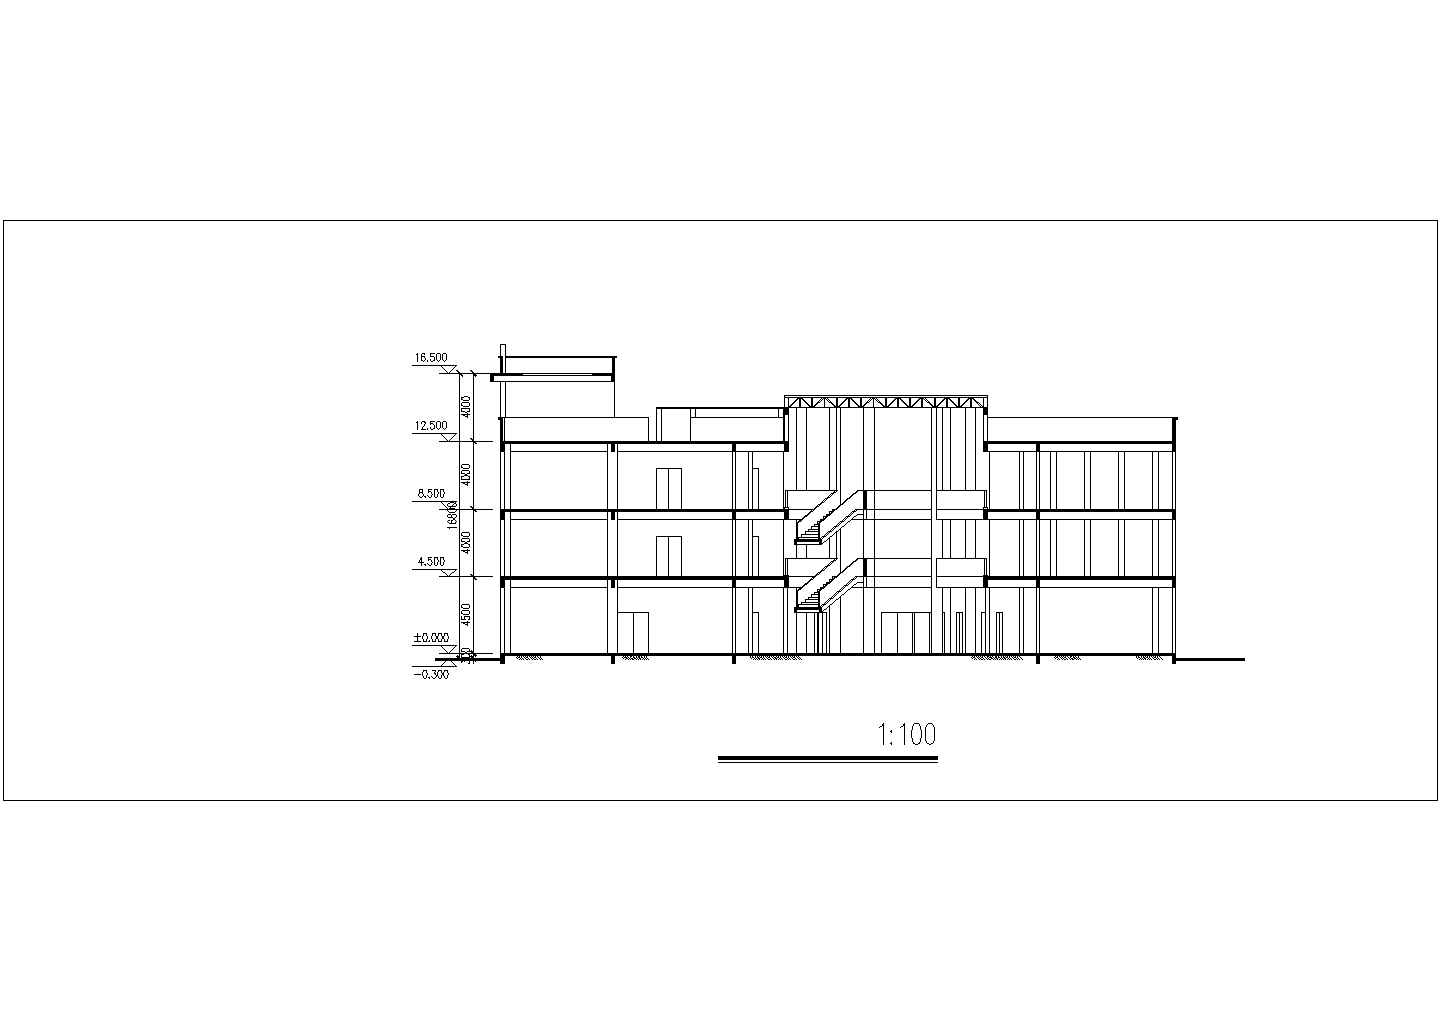 长64米 宽55.7米 4层大学展览馆CAD建筑设计方案-各层平面 2立1剖